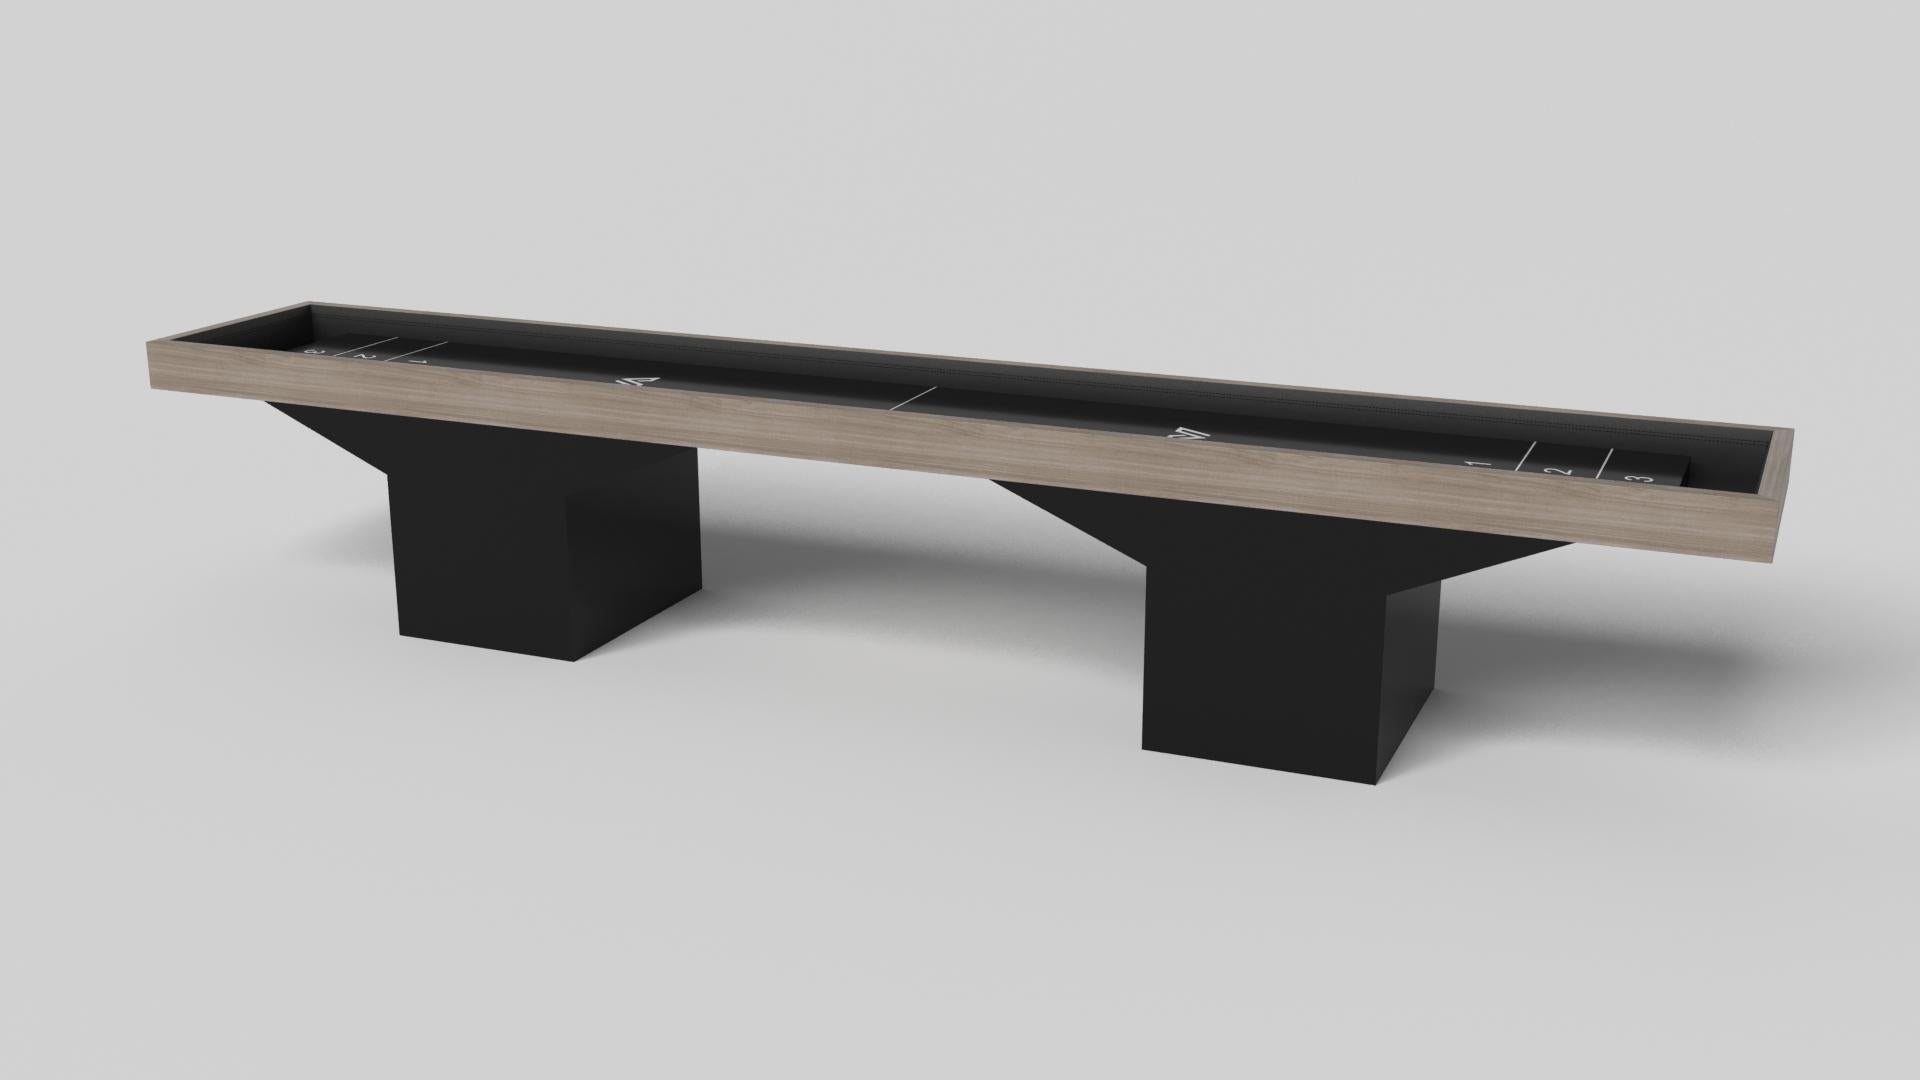 Le design minimaliste rencontre l'élégance opulente dans la table de shuffleboard Trestle. Détaillée avec une surface professionnelle pour des jeux sans fin, cette table contemporaine est fabriquée de manière experte. Les pieds carrés lui confèrent